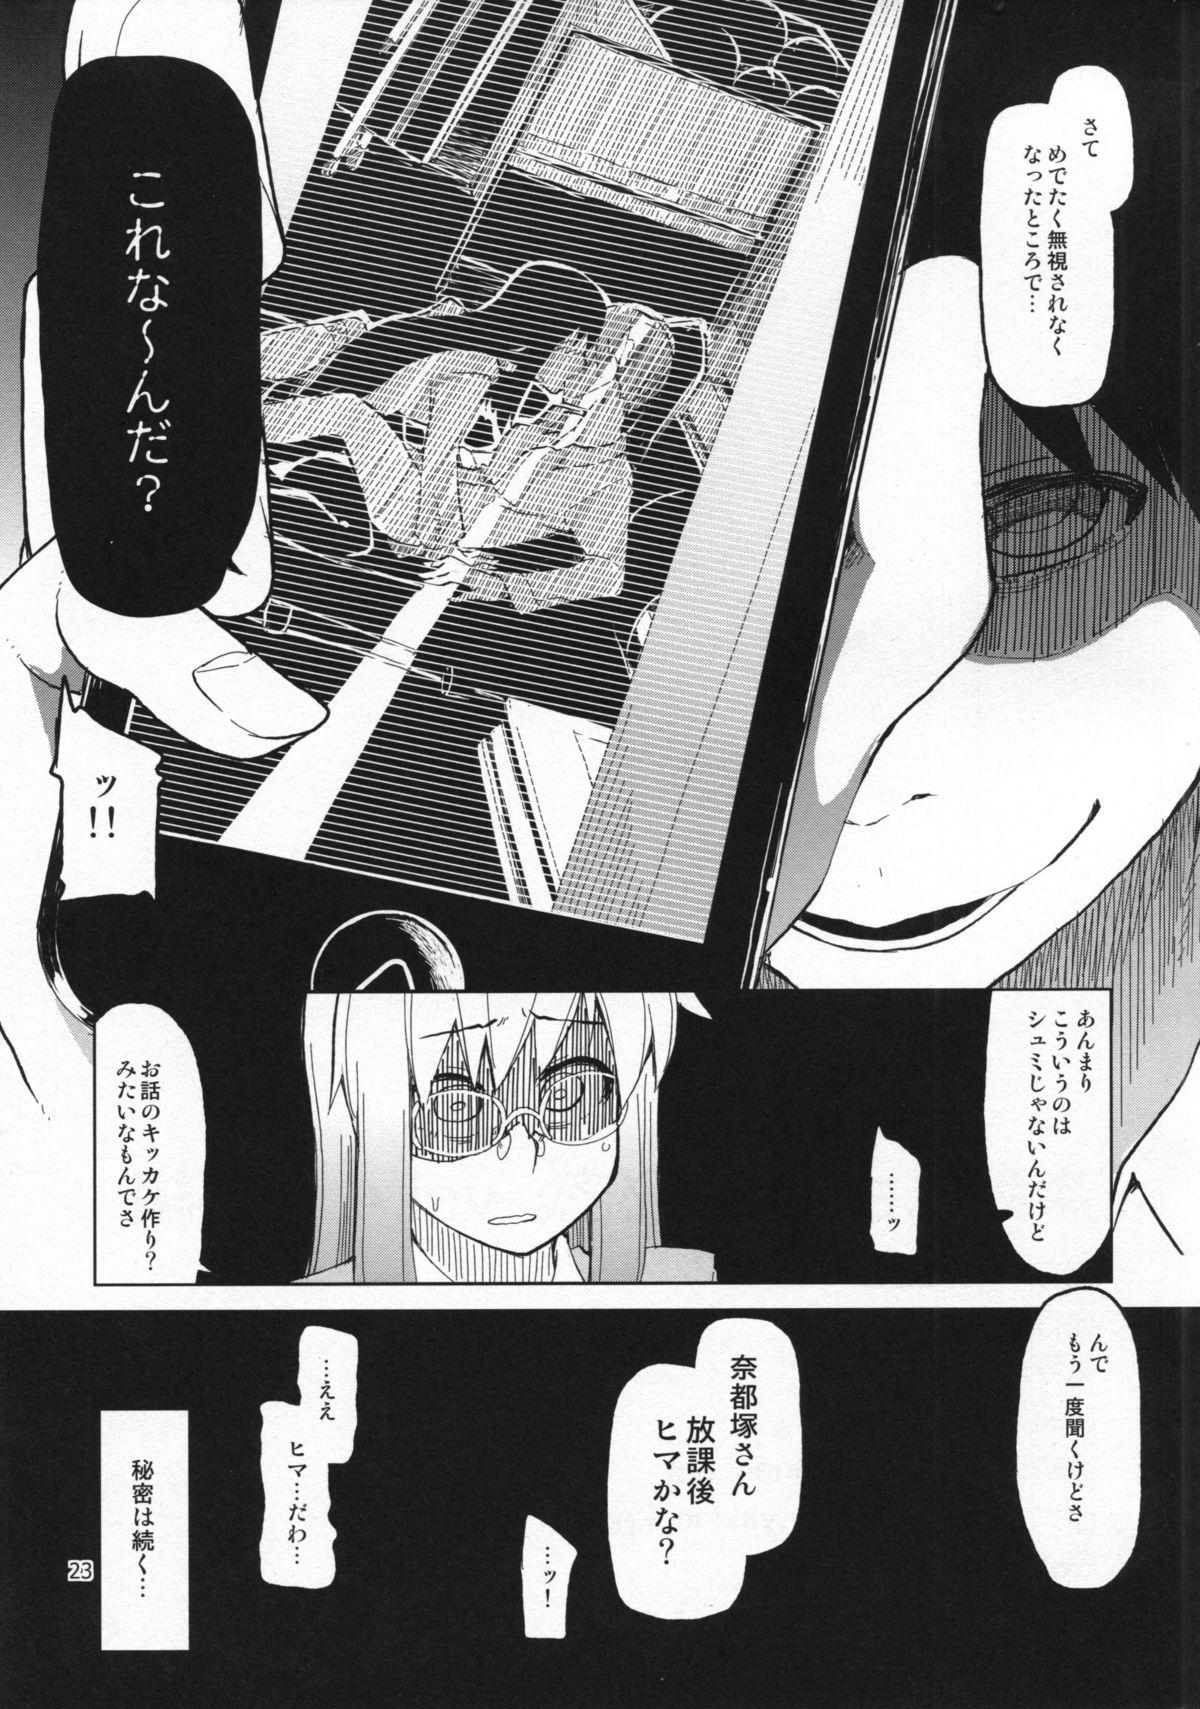 Natsuzuka-san no Himitsu. Vol. 4 Manshin Hen 23